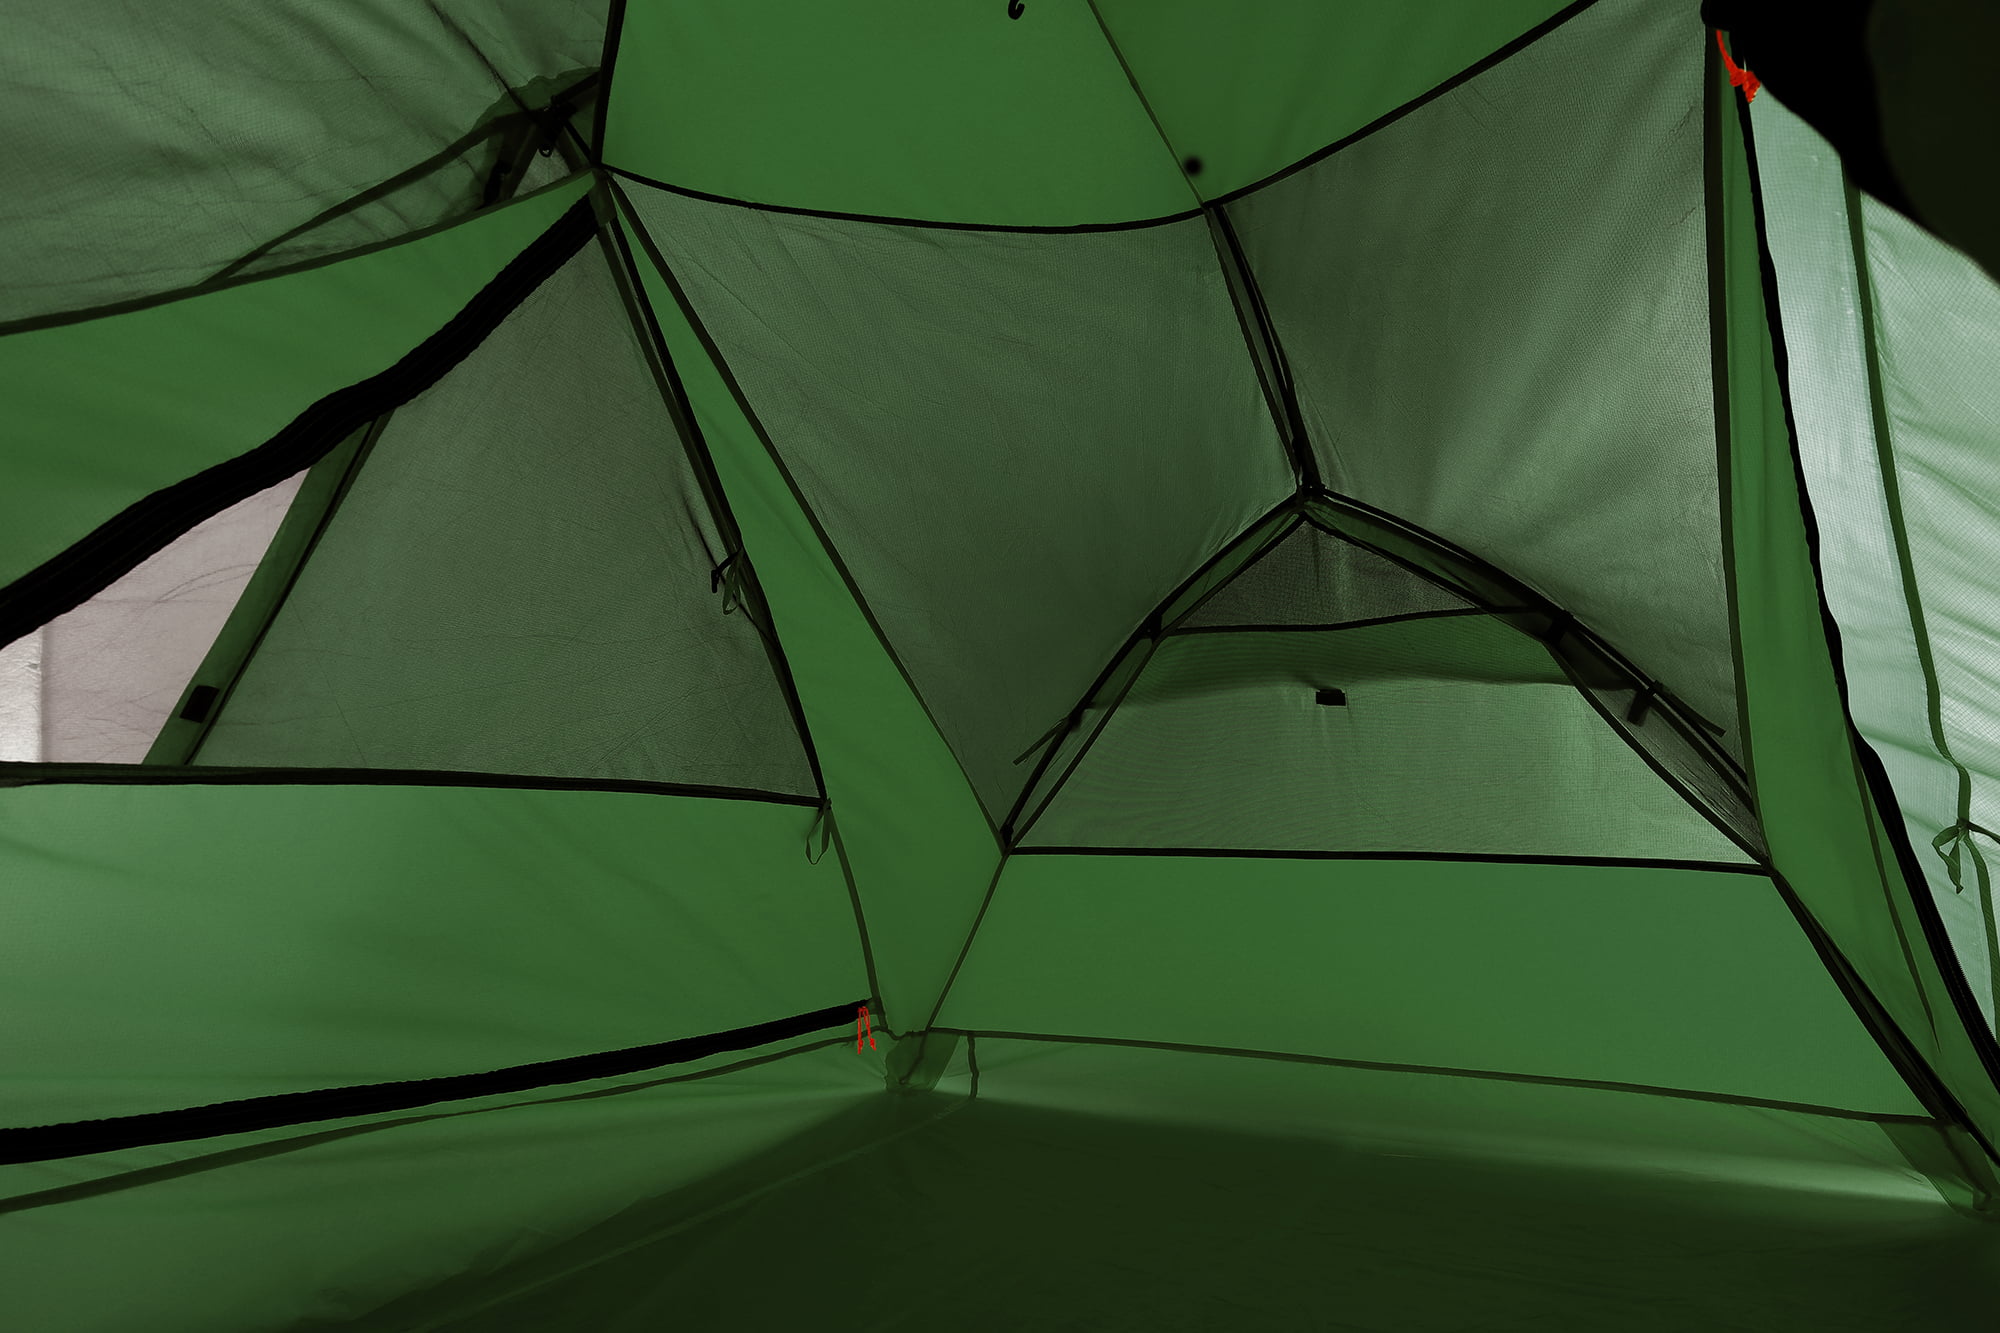 Clostnature 4-Man Lightweight Backpacking Tent - 3 Season Ultralight W